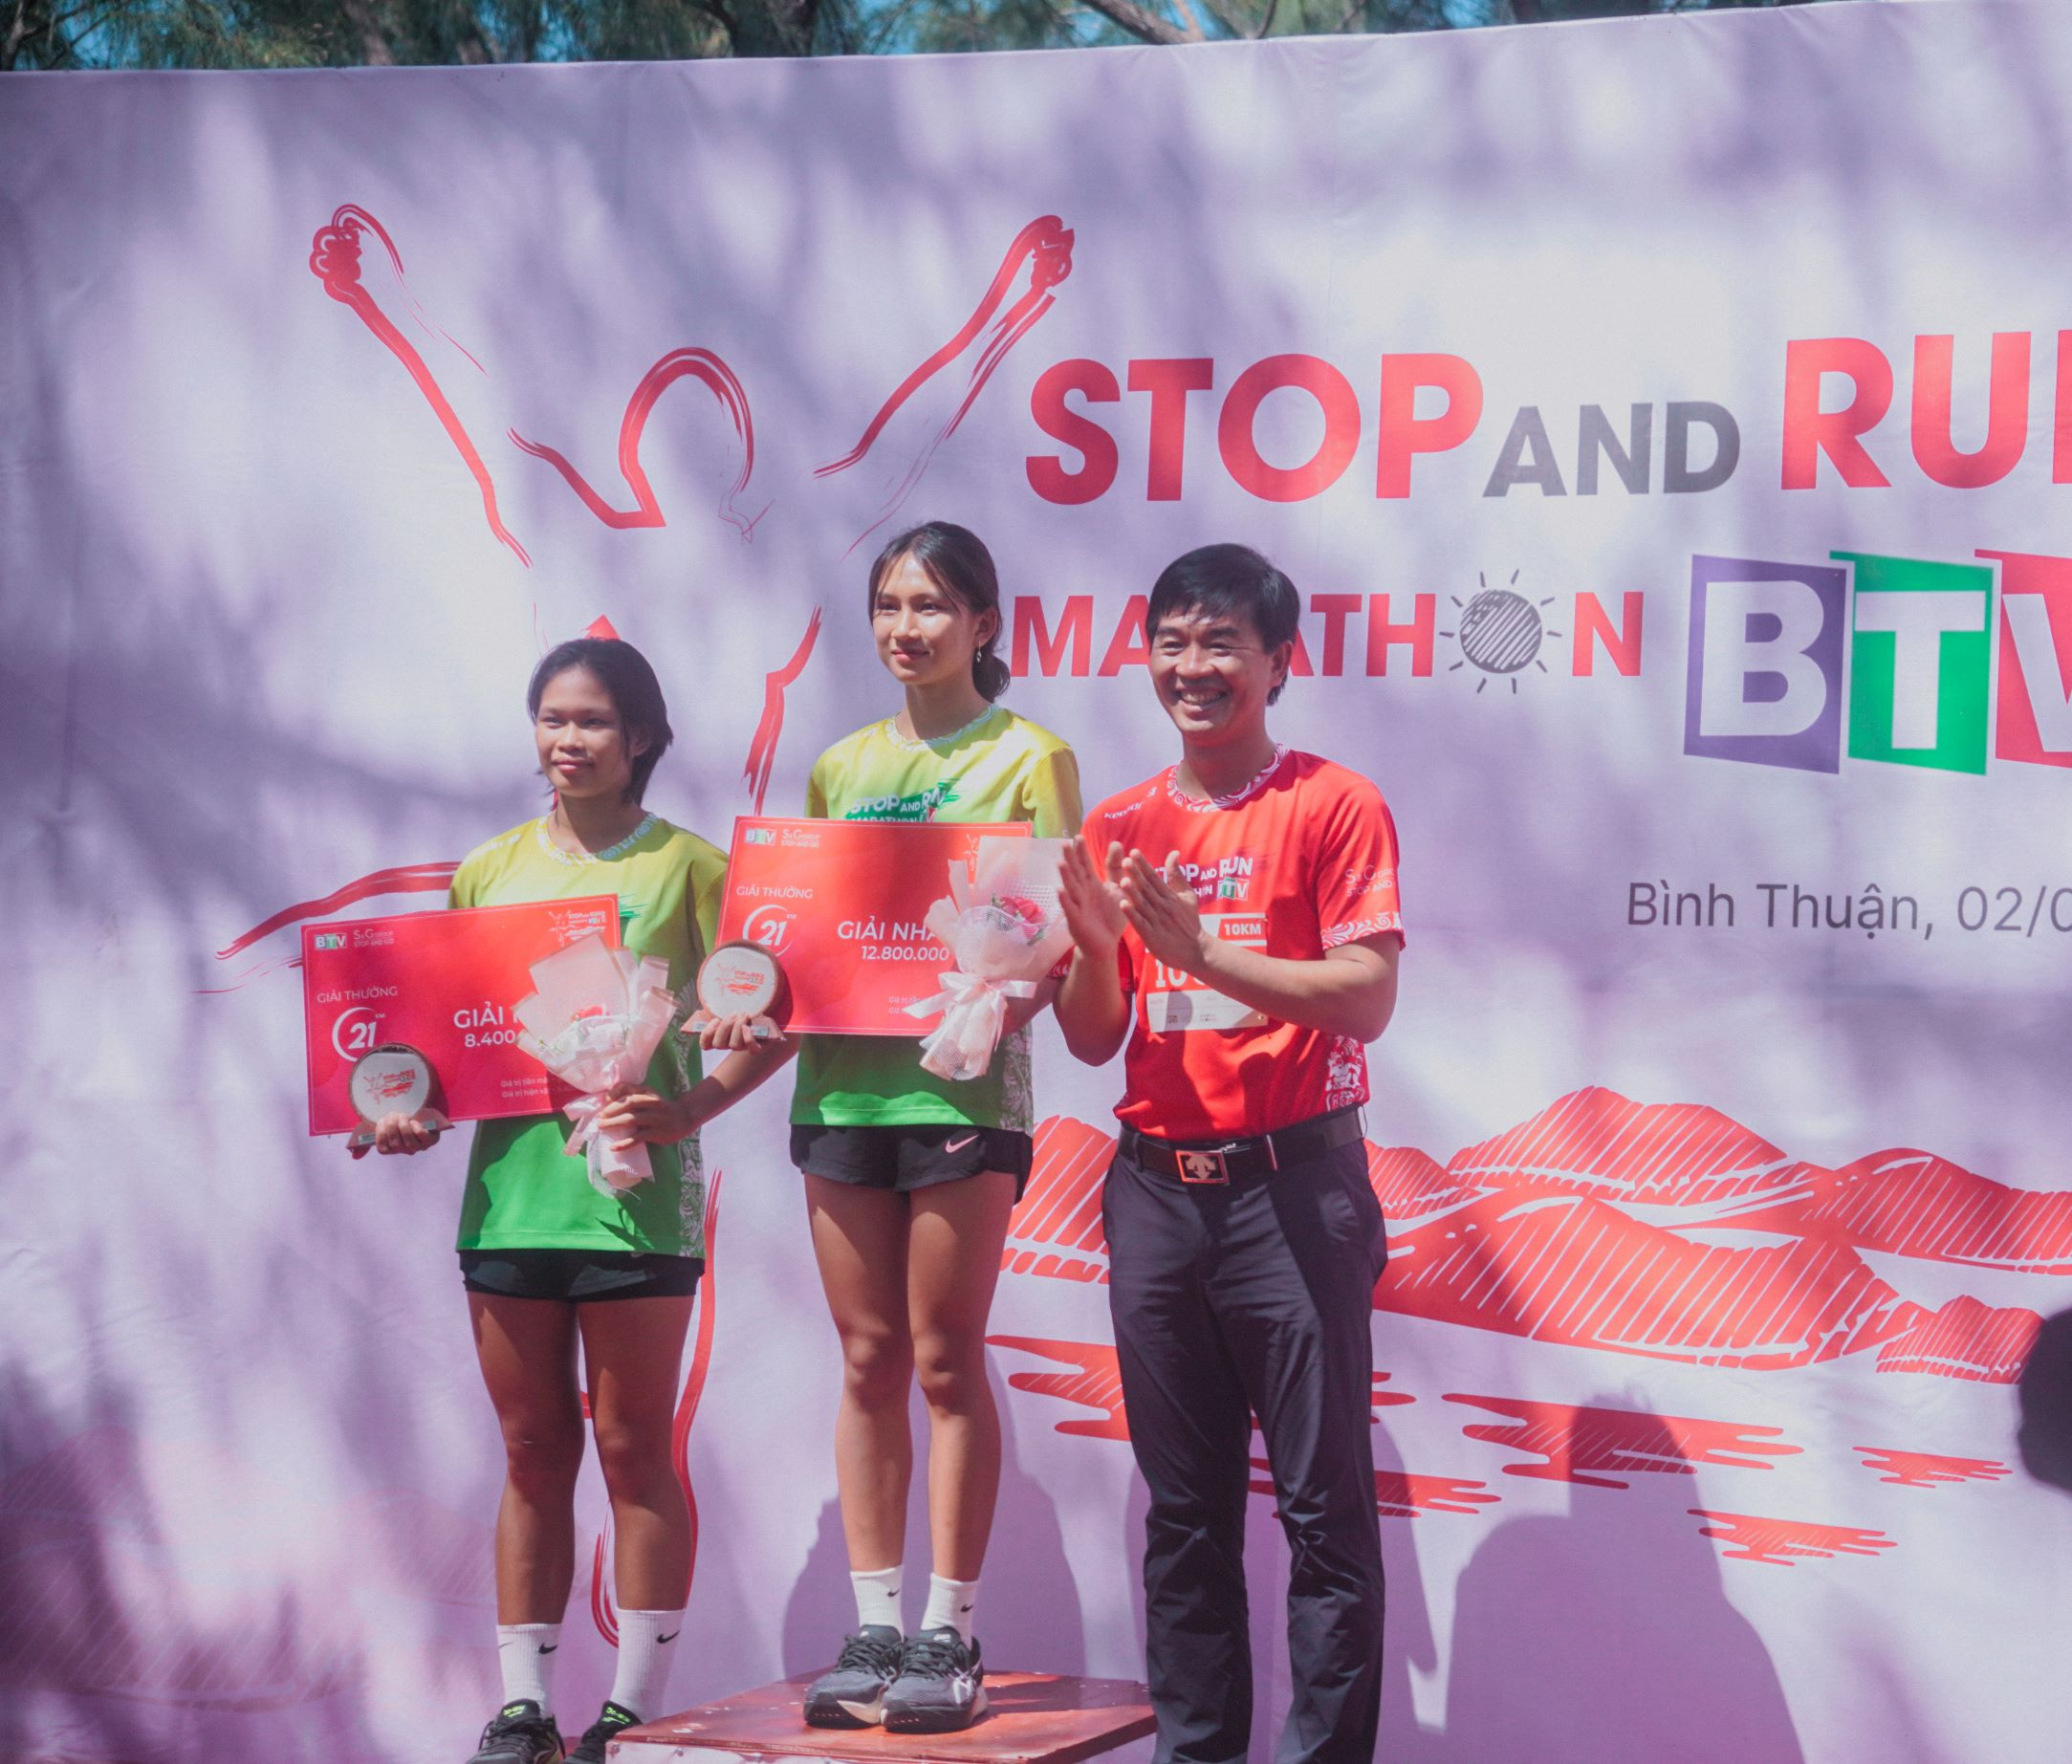 Lễ phát thưởng cho nhà vô địch đạt thành tích trên đường đua đã kết thúc mùa giải Stop And Run Marathon 2023 thành công tốt đẹp.